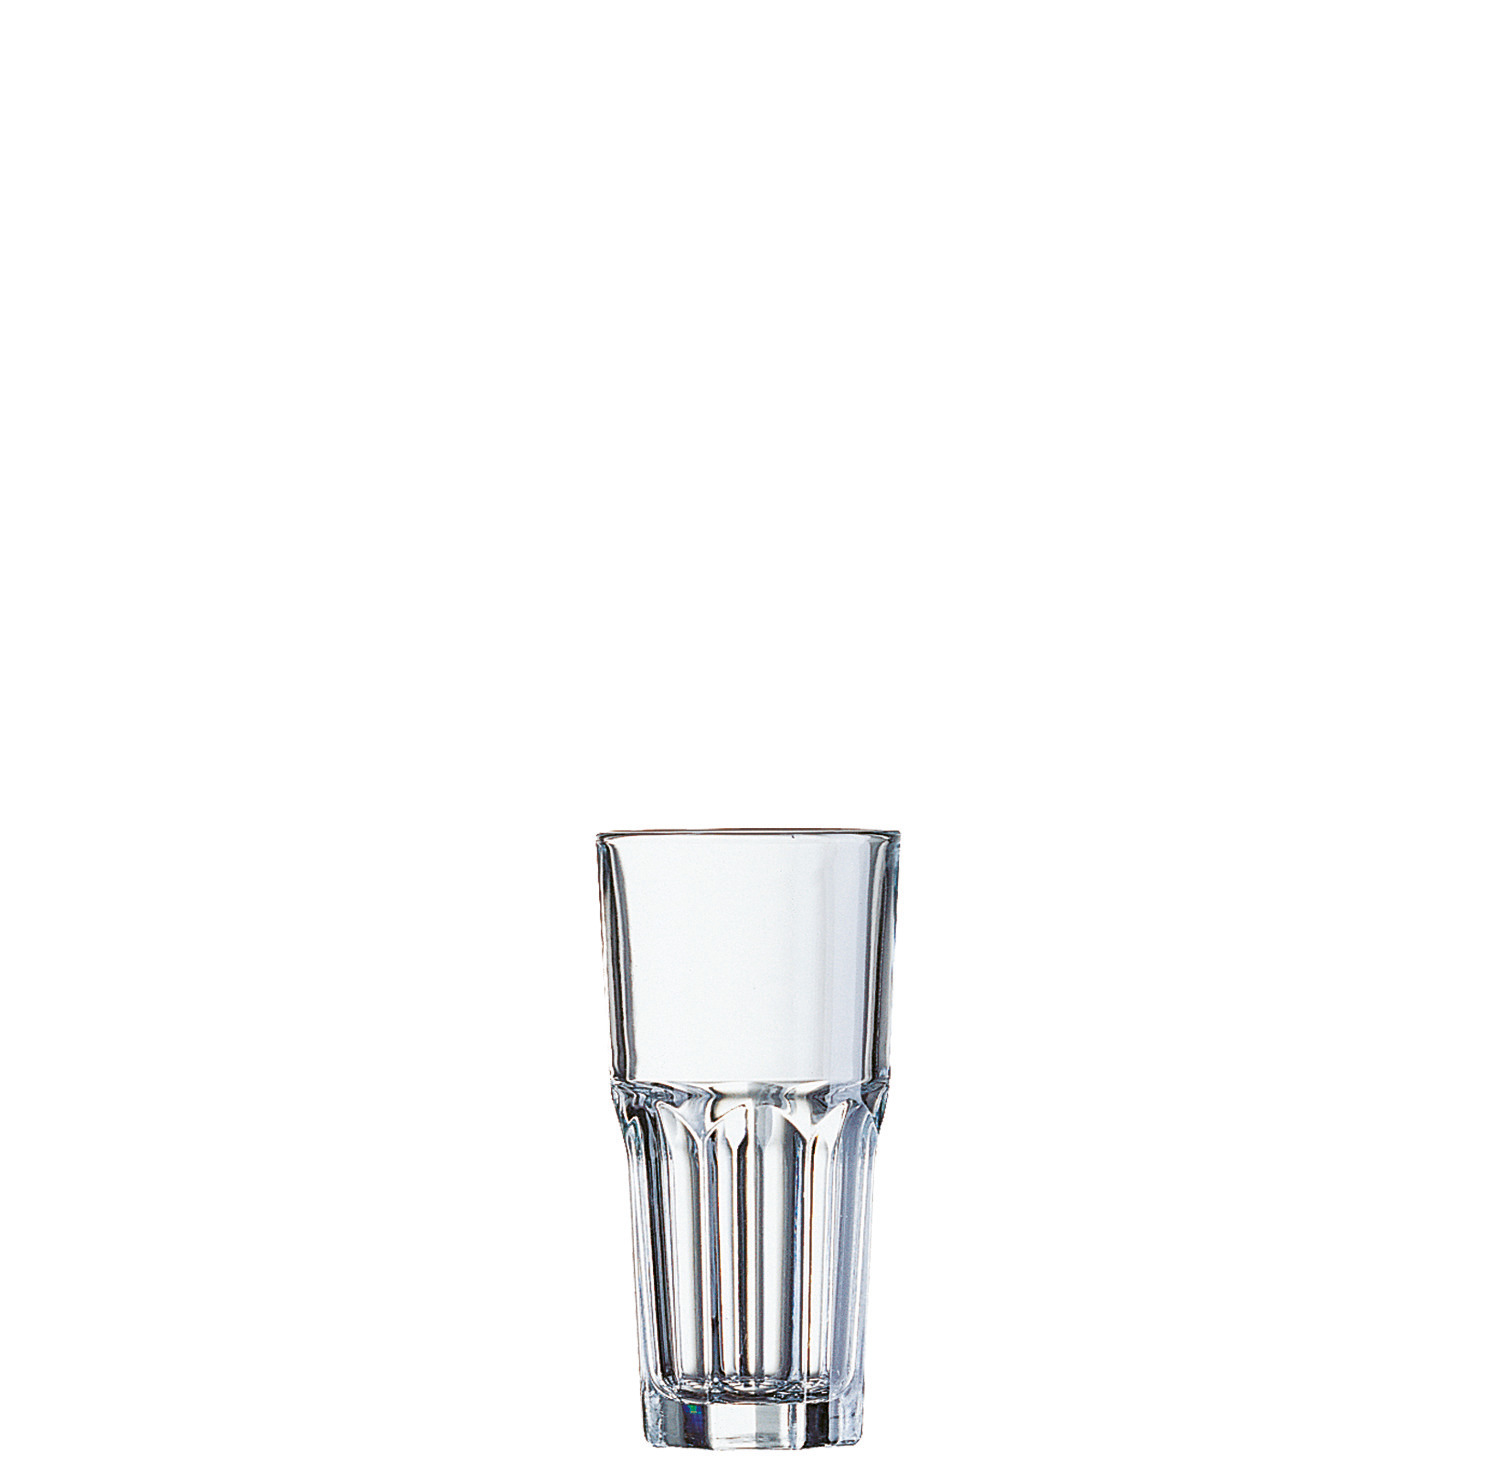 Longdrinkglas "FH20" stapelbar 64 mm / 0,20 l transparent